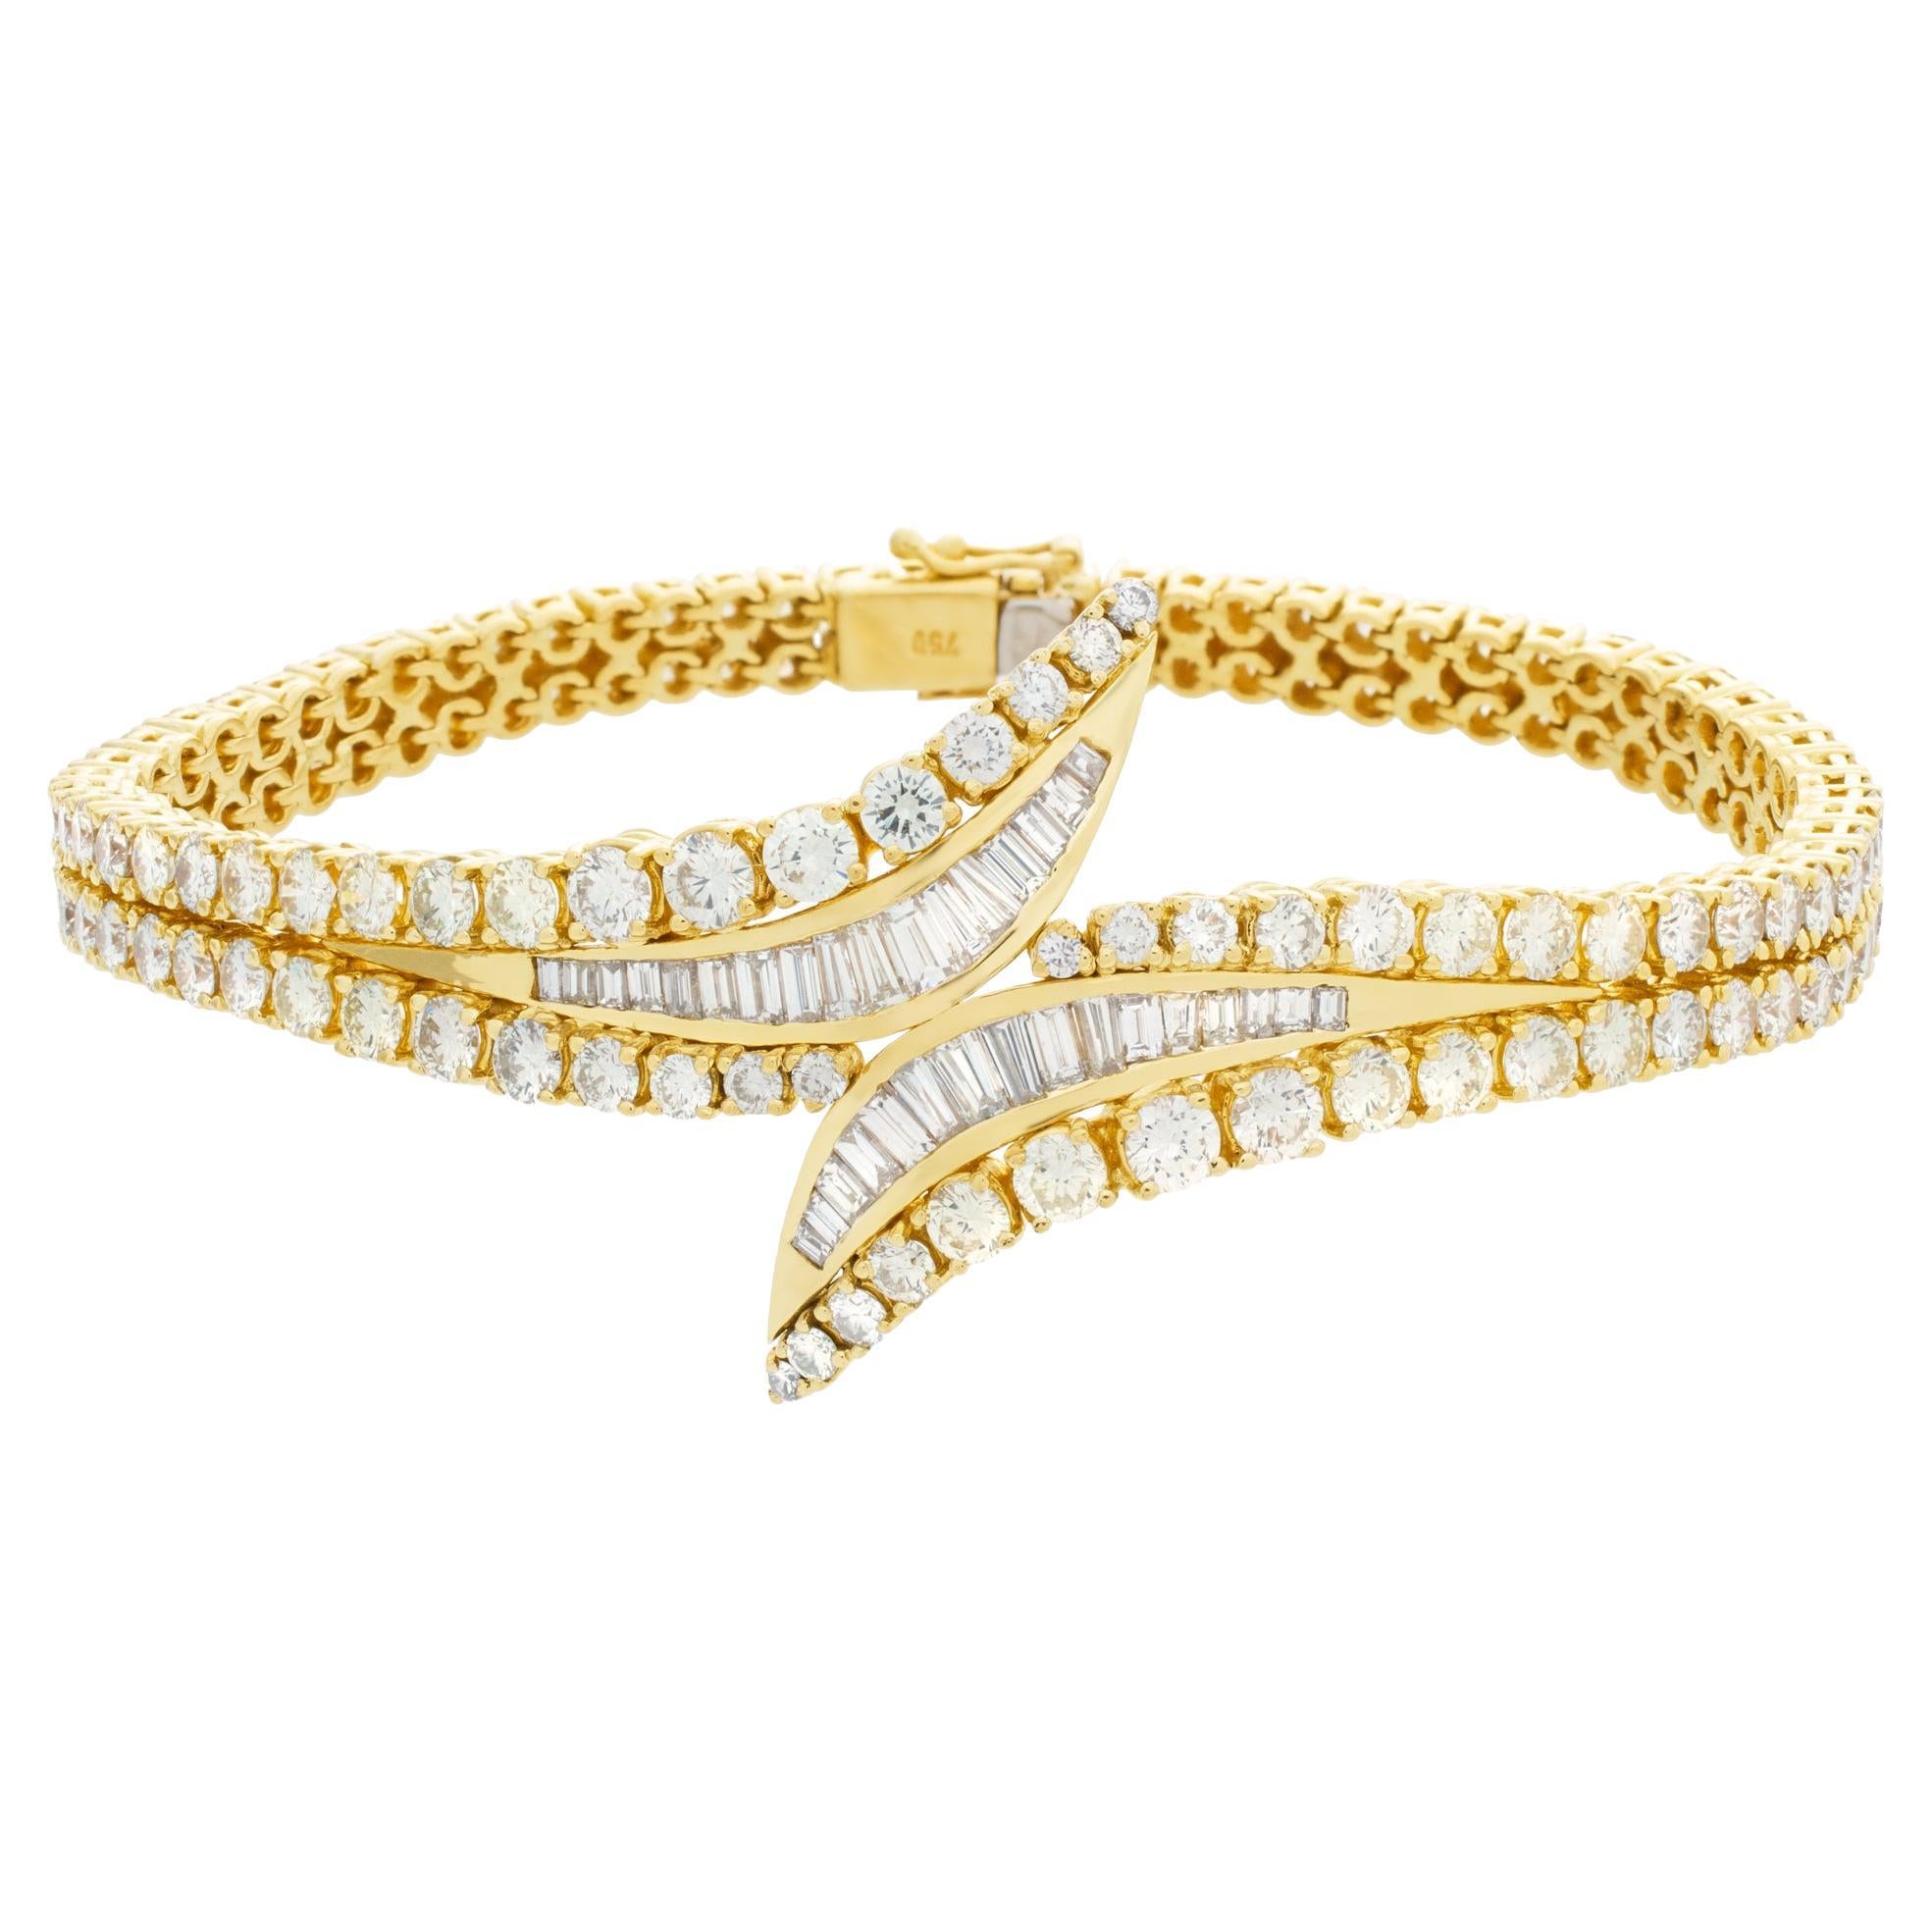 Armband aus 18 Karat Gelbgold mit über 9 Karat Diamanten im runden Brillantschliff